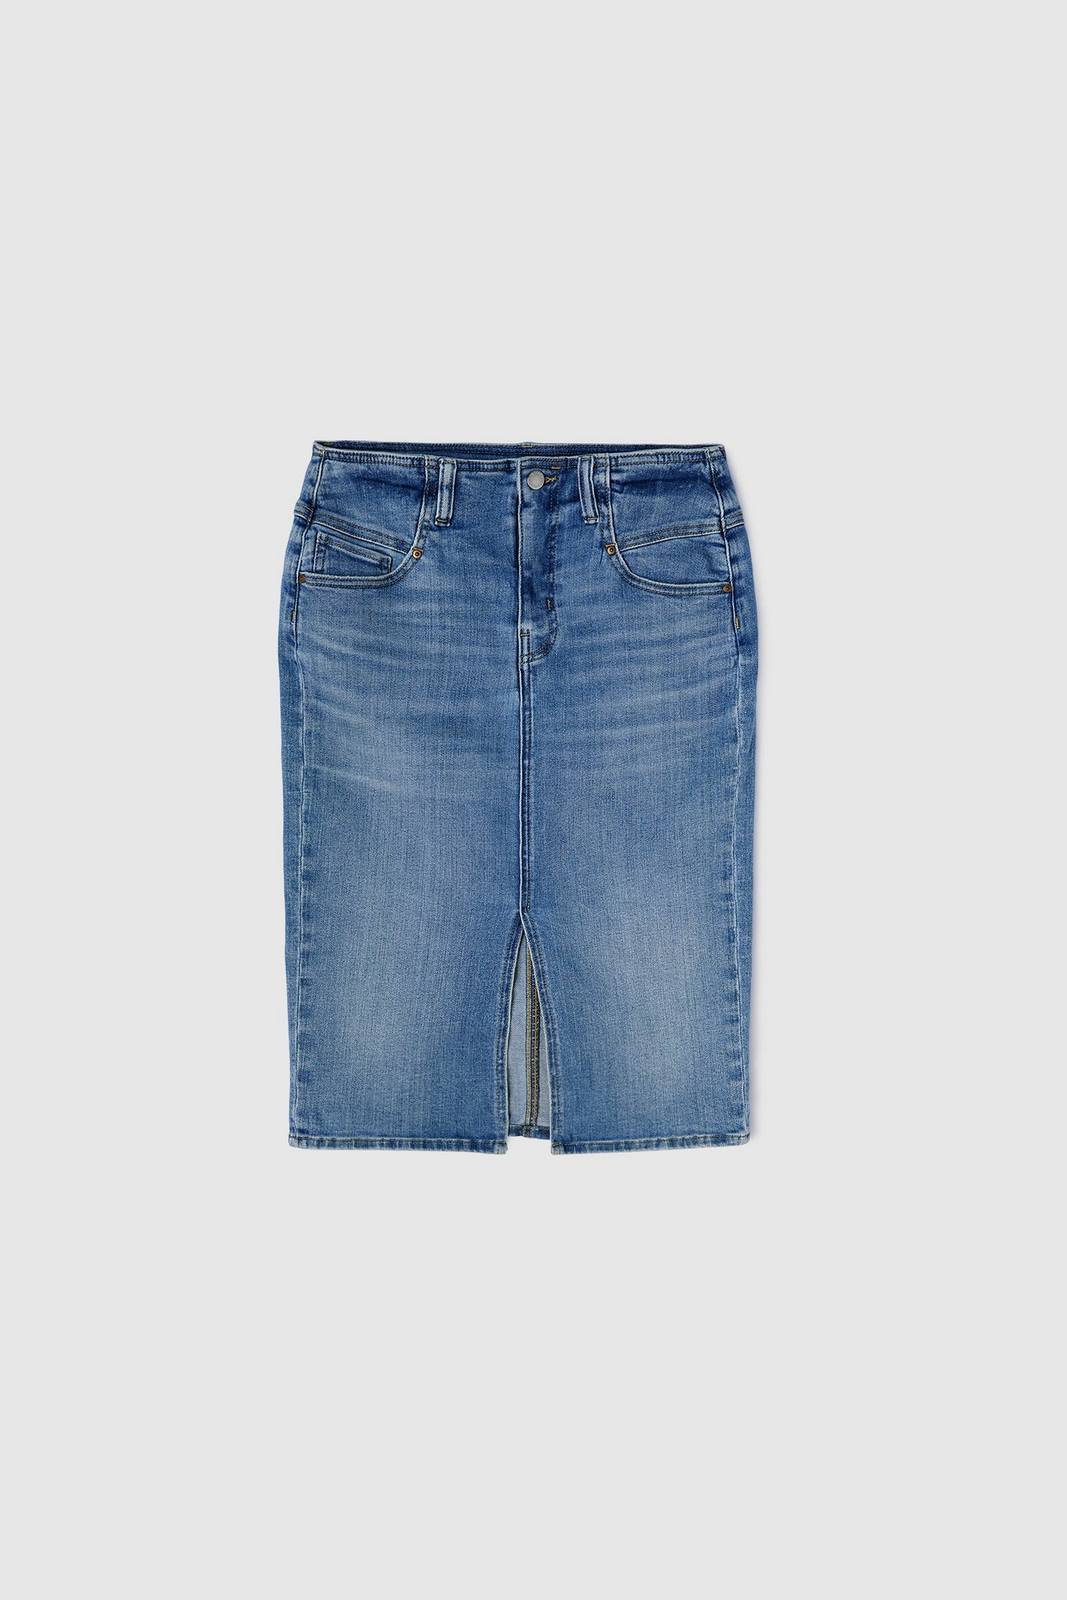 Image of Gas Jeans 90 s Mom Skirt - Gonna Midi In Denim Jeans - Taglia XS Abbigliamento